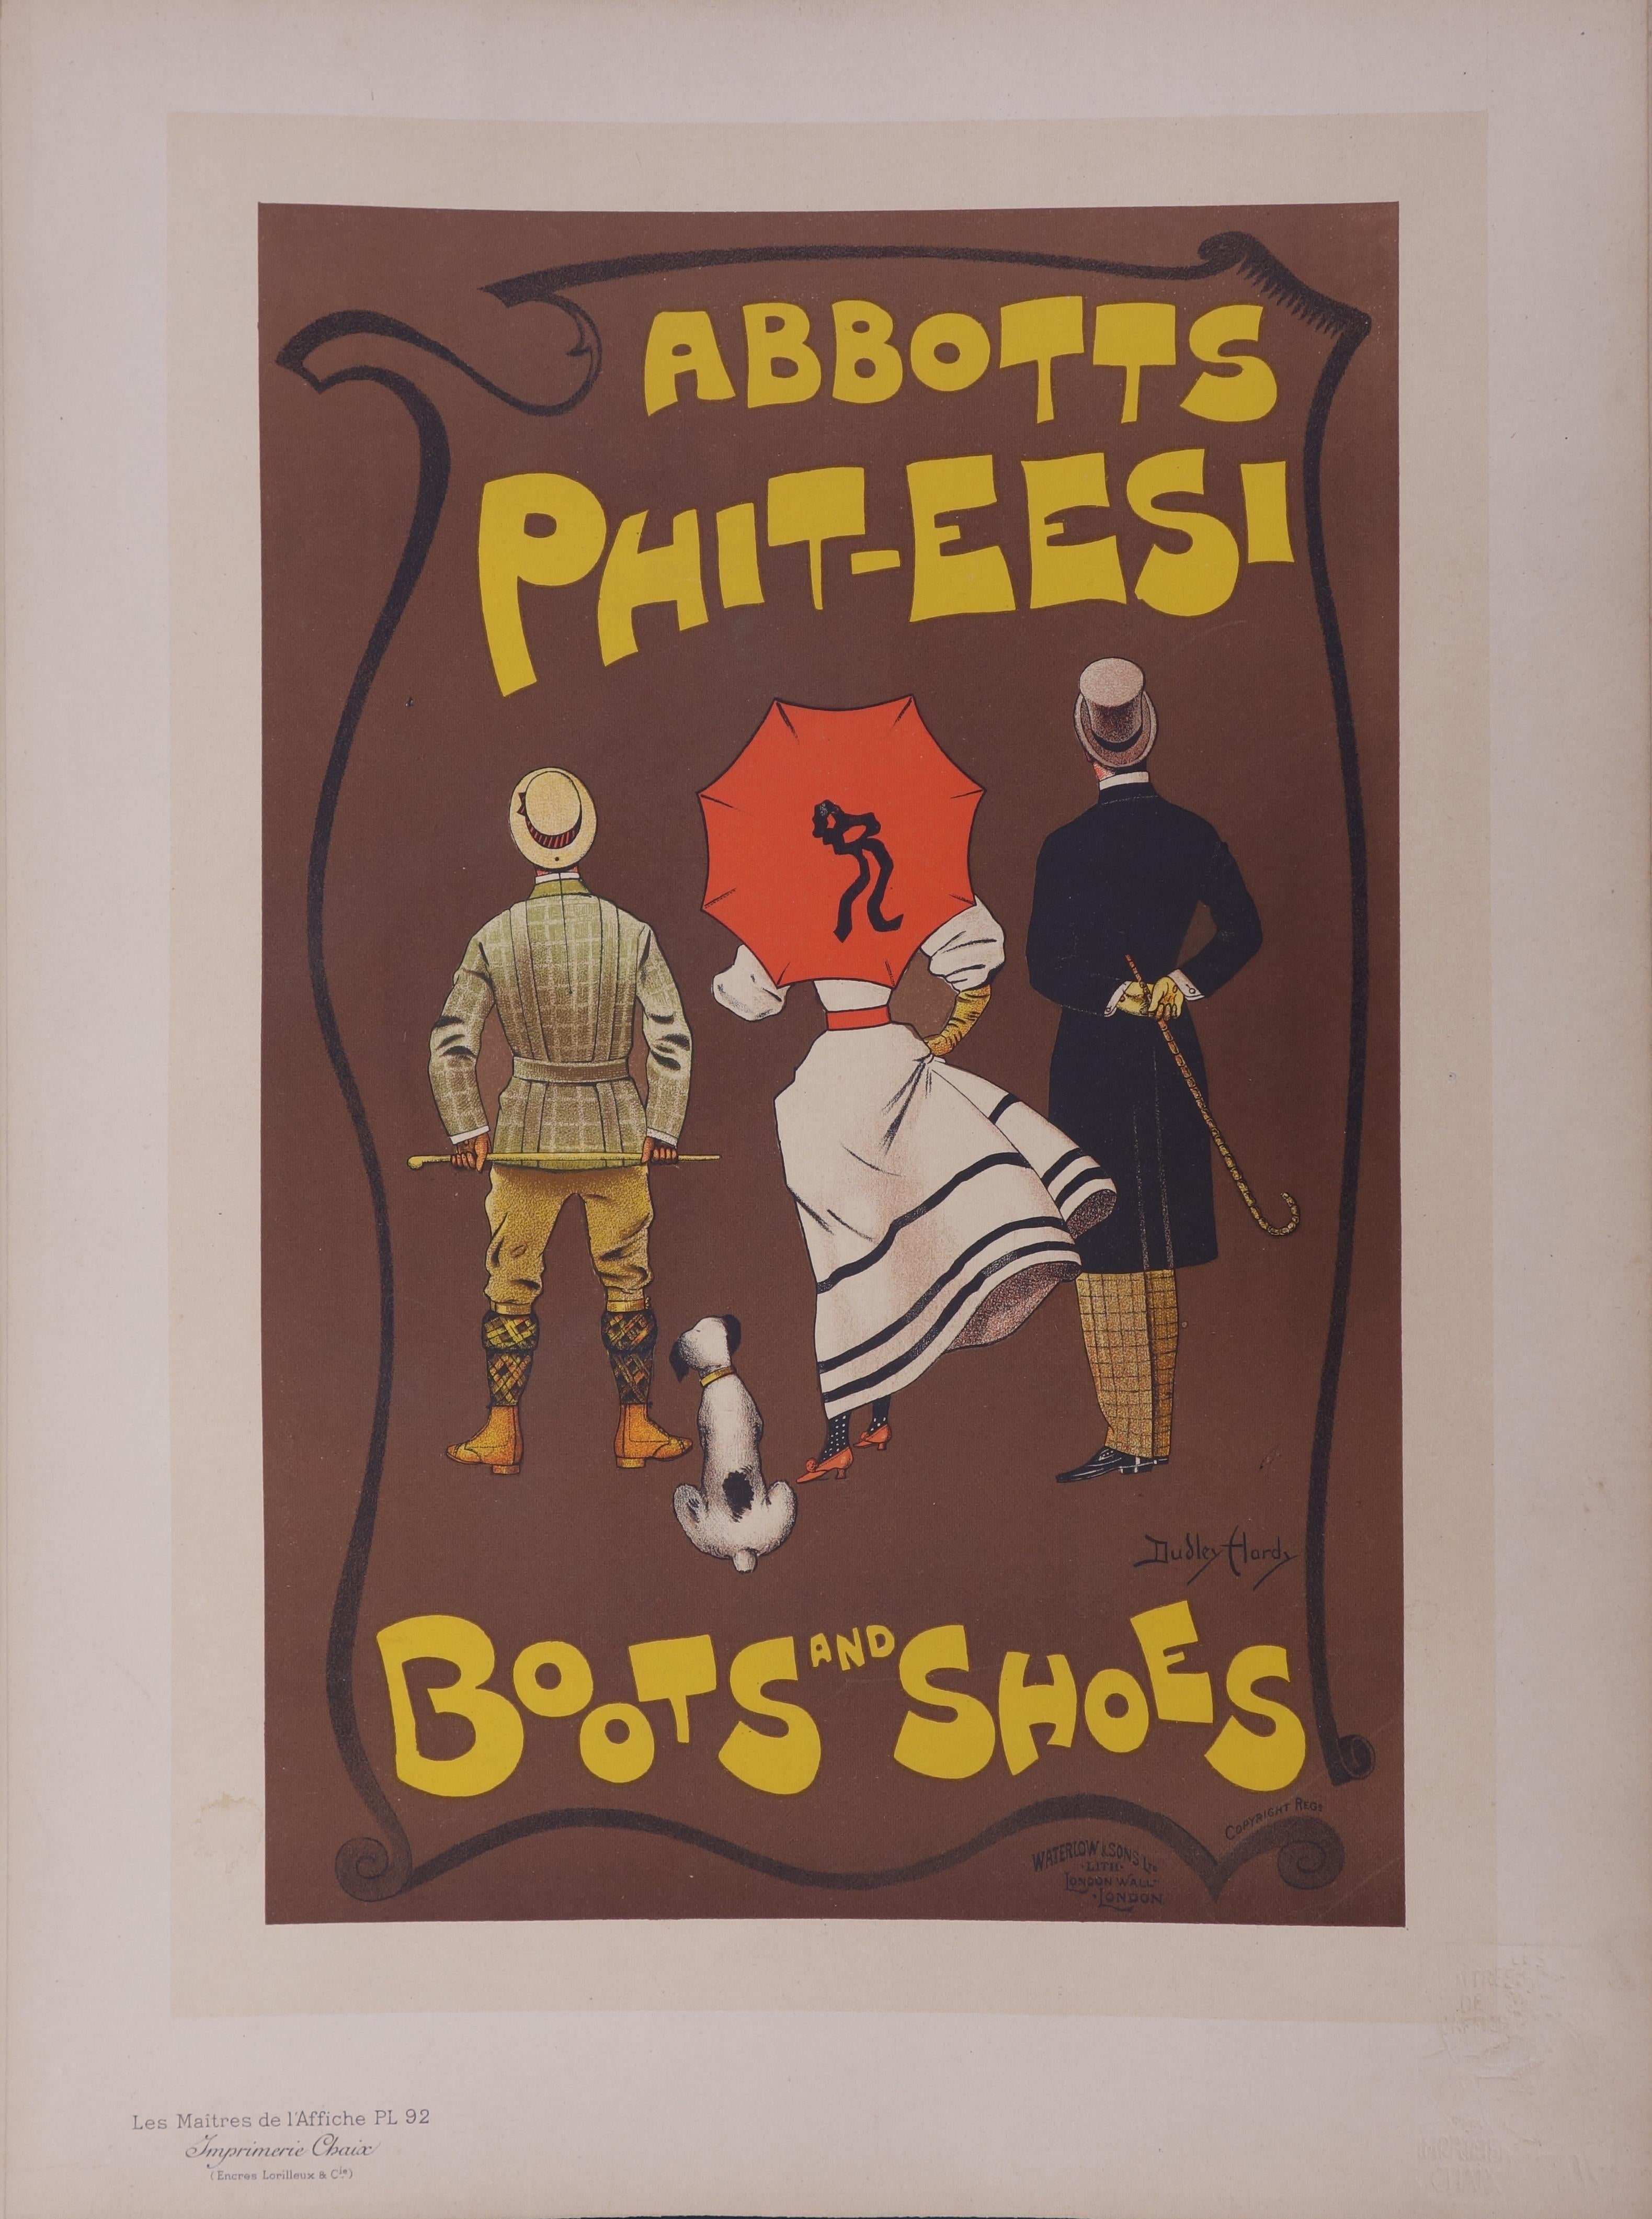 Dudley Hardy Figurative Print - Abbotts, Boots and Shoes - Lithograph (Les Maîtres de l'Affiche), 1897